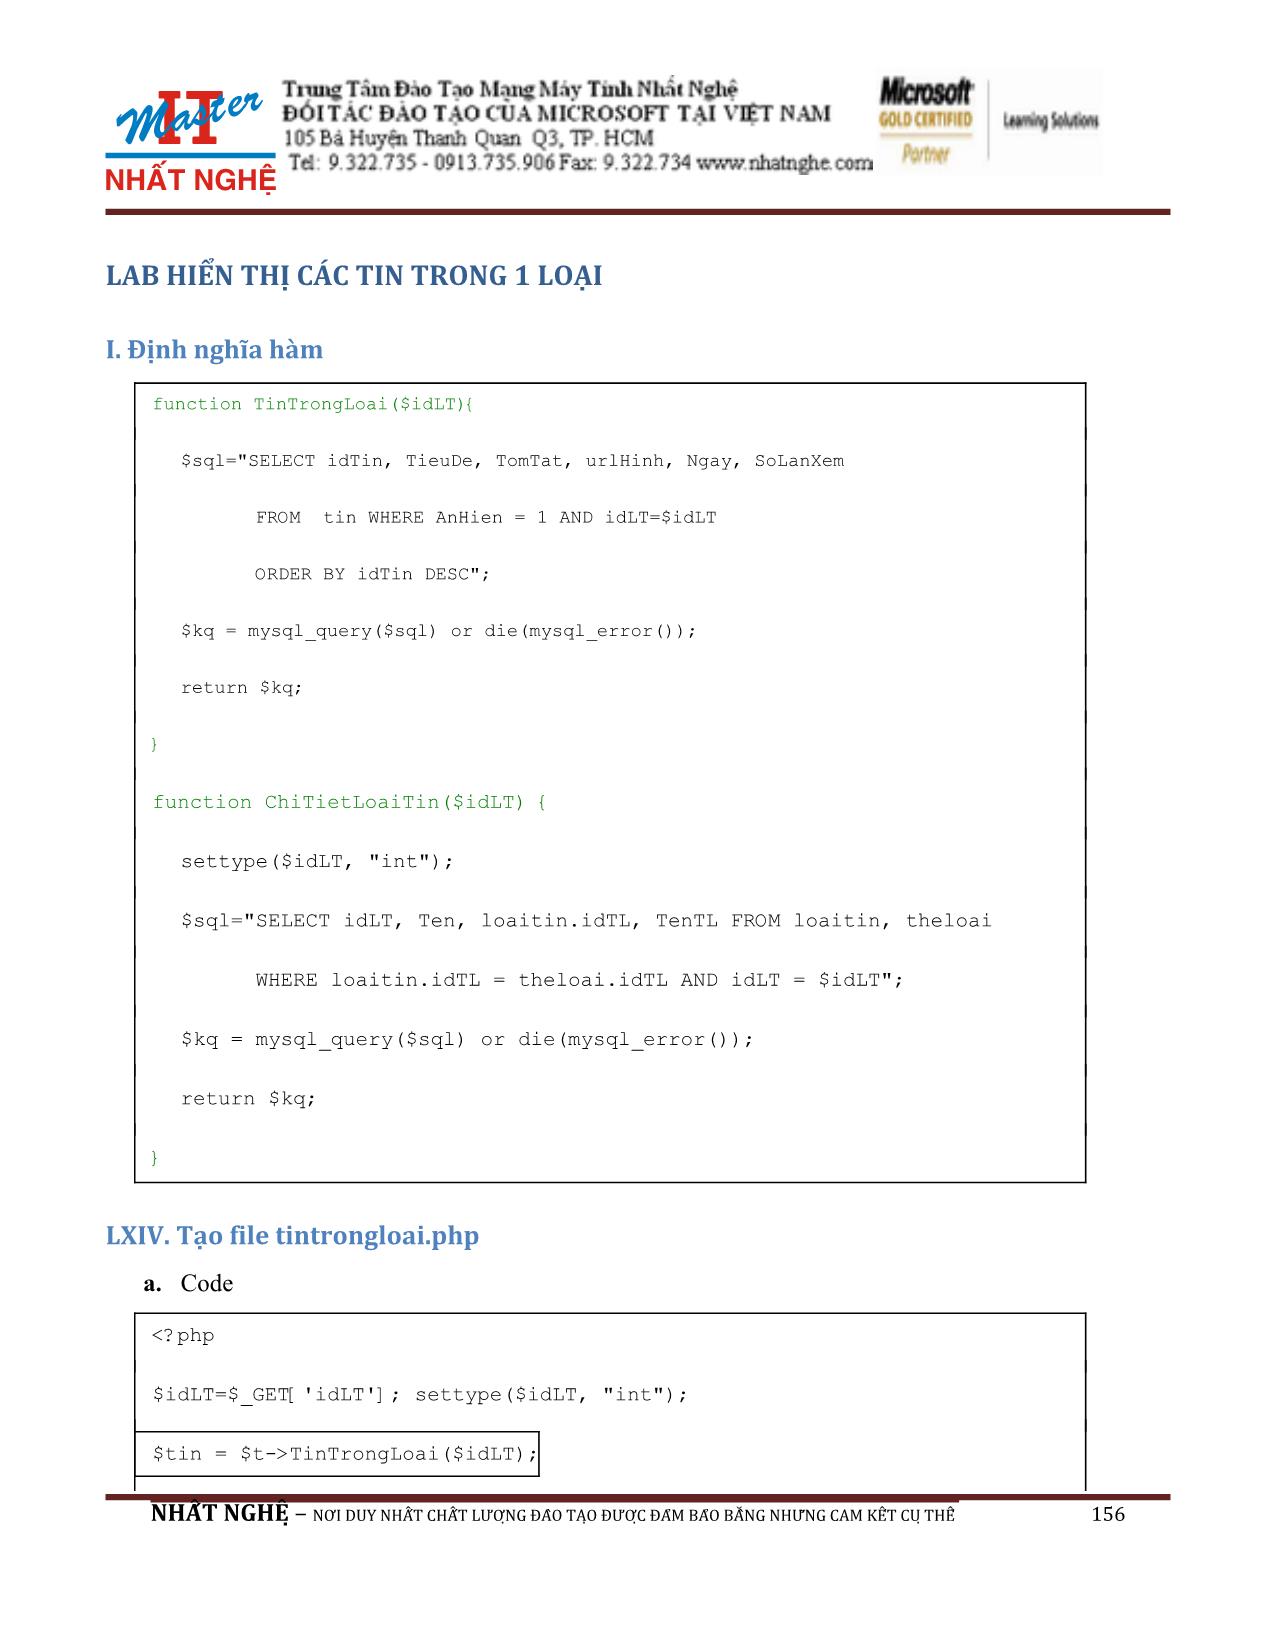 Giáo trình Hướng dẫn thiết kế Web PHP và MySQL (Phần 2) trang 8